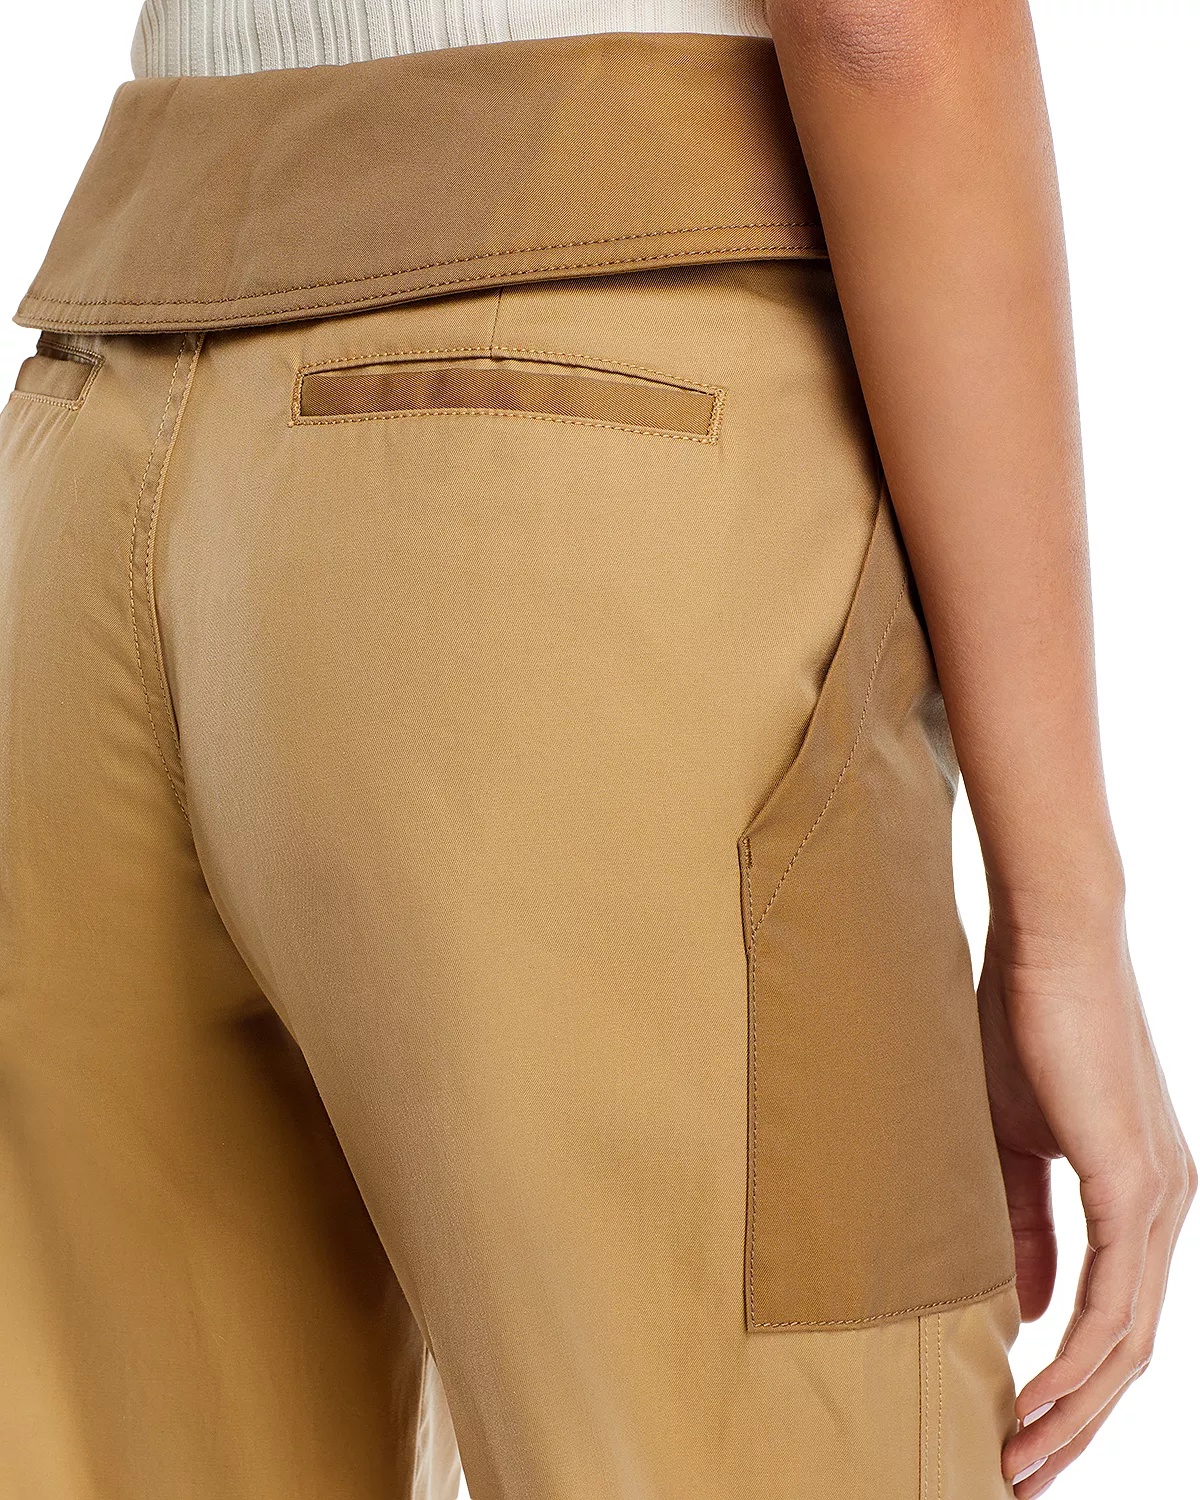 Foldover Waist Cotton Pants - 5